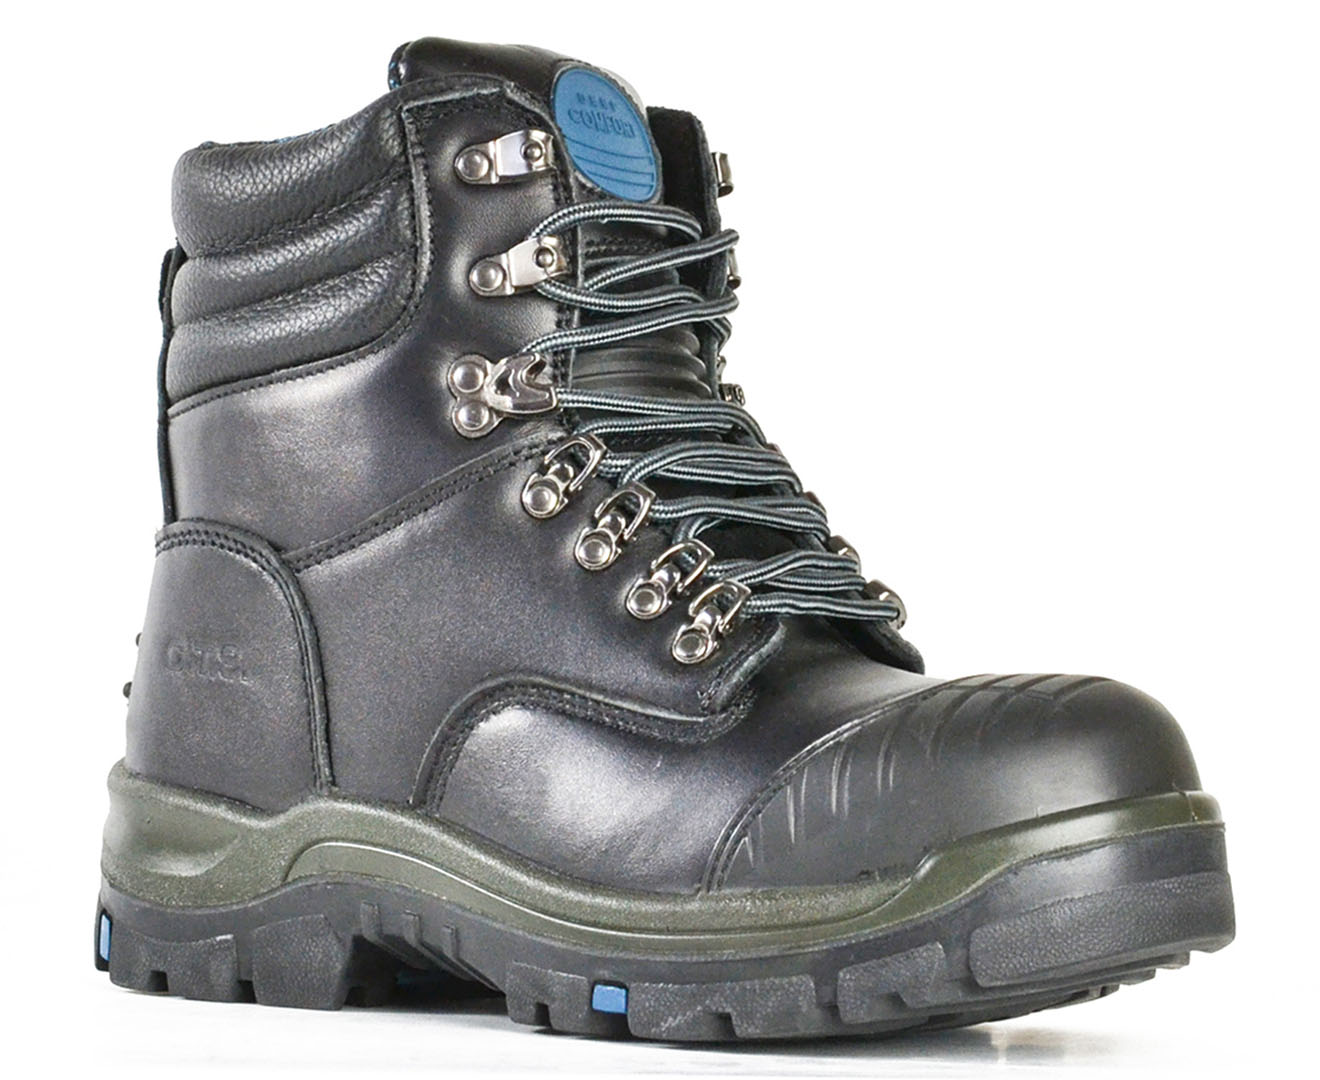 Bata Men's Patriot Lace Up Safety Boots - Black | Catch.com.au